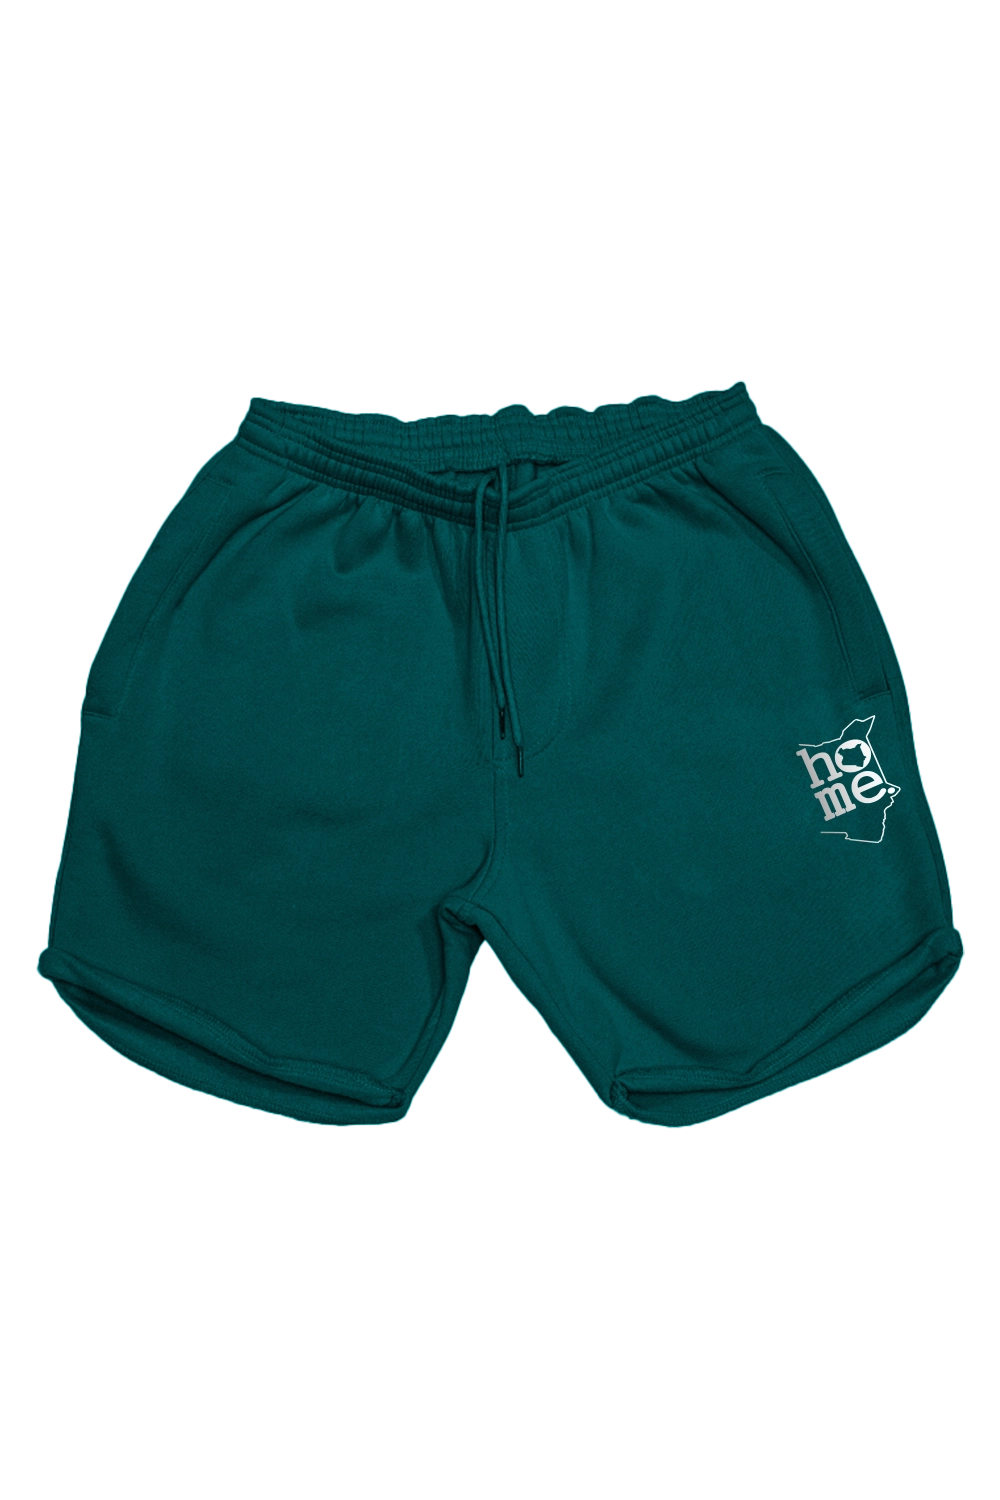 Men's Long Shorts - Deep Aqua (Heavy Fabric)